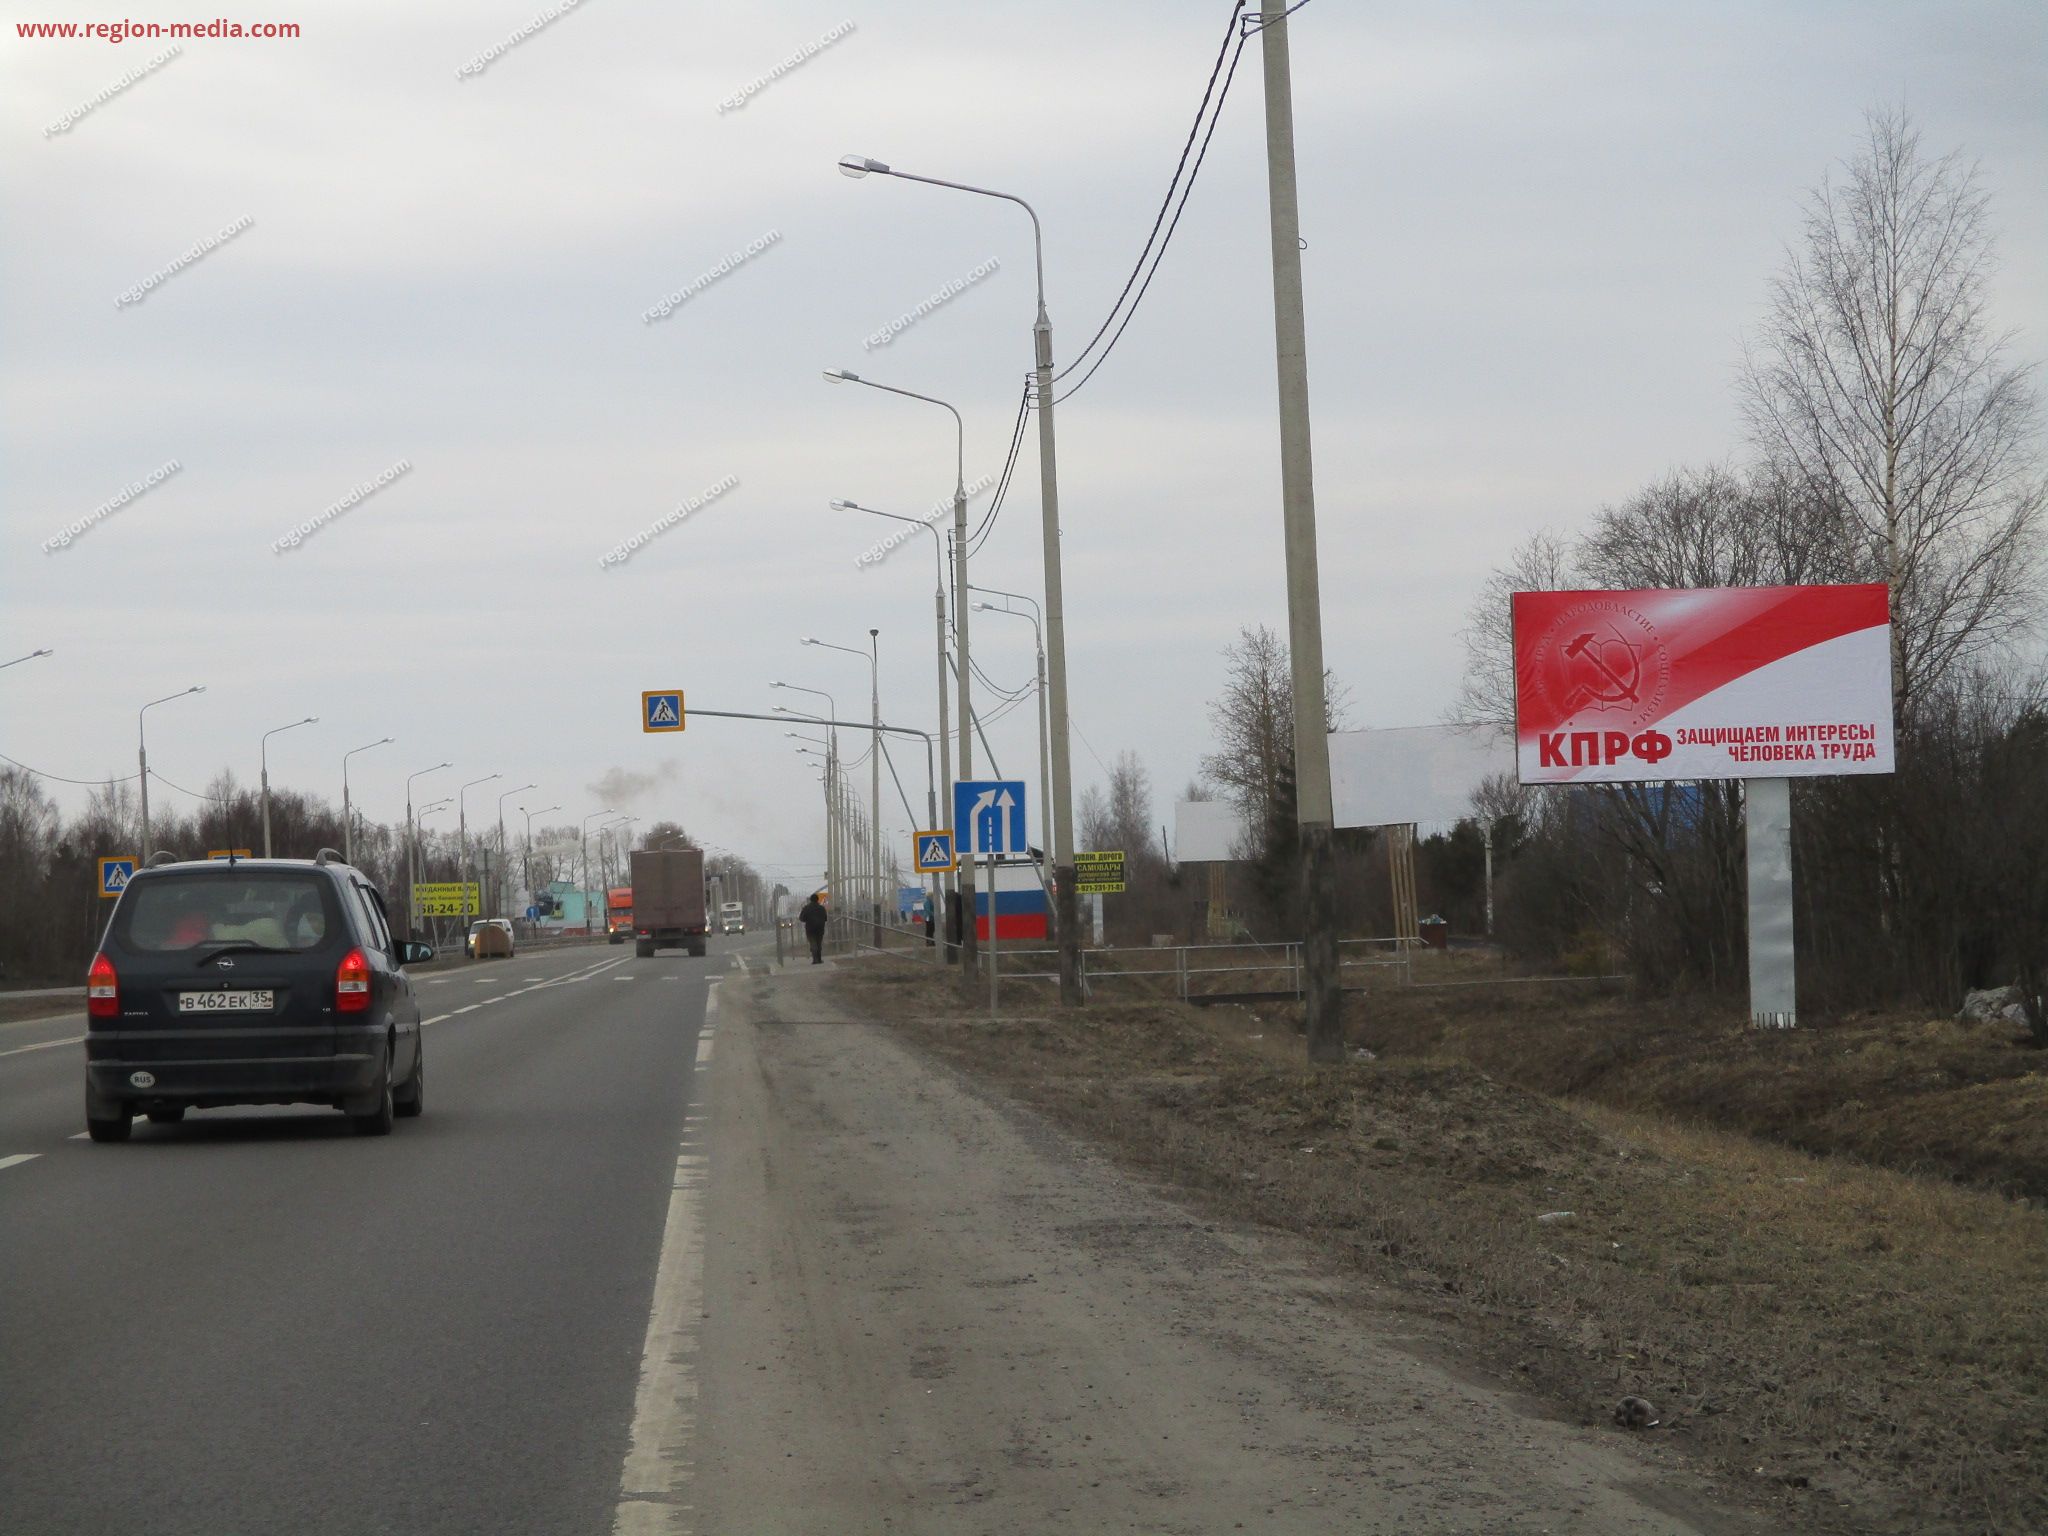 Размещение рекламы партии "Кпрф" на щитах 3х6 в городе Вологда